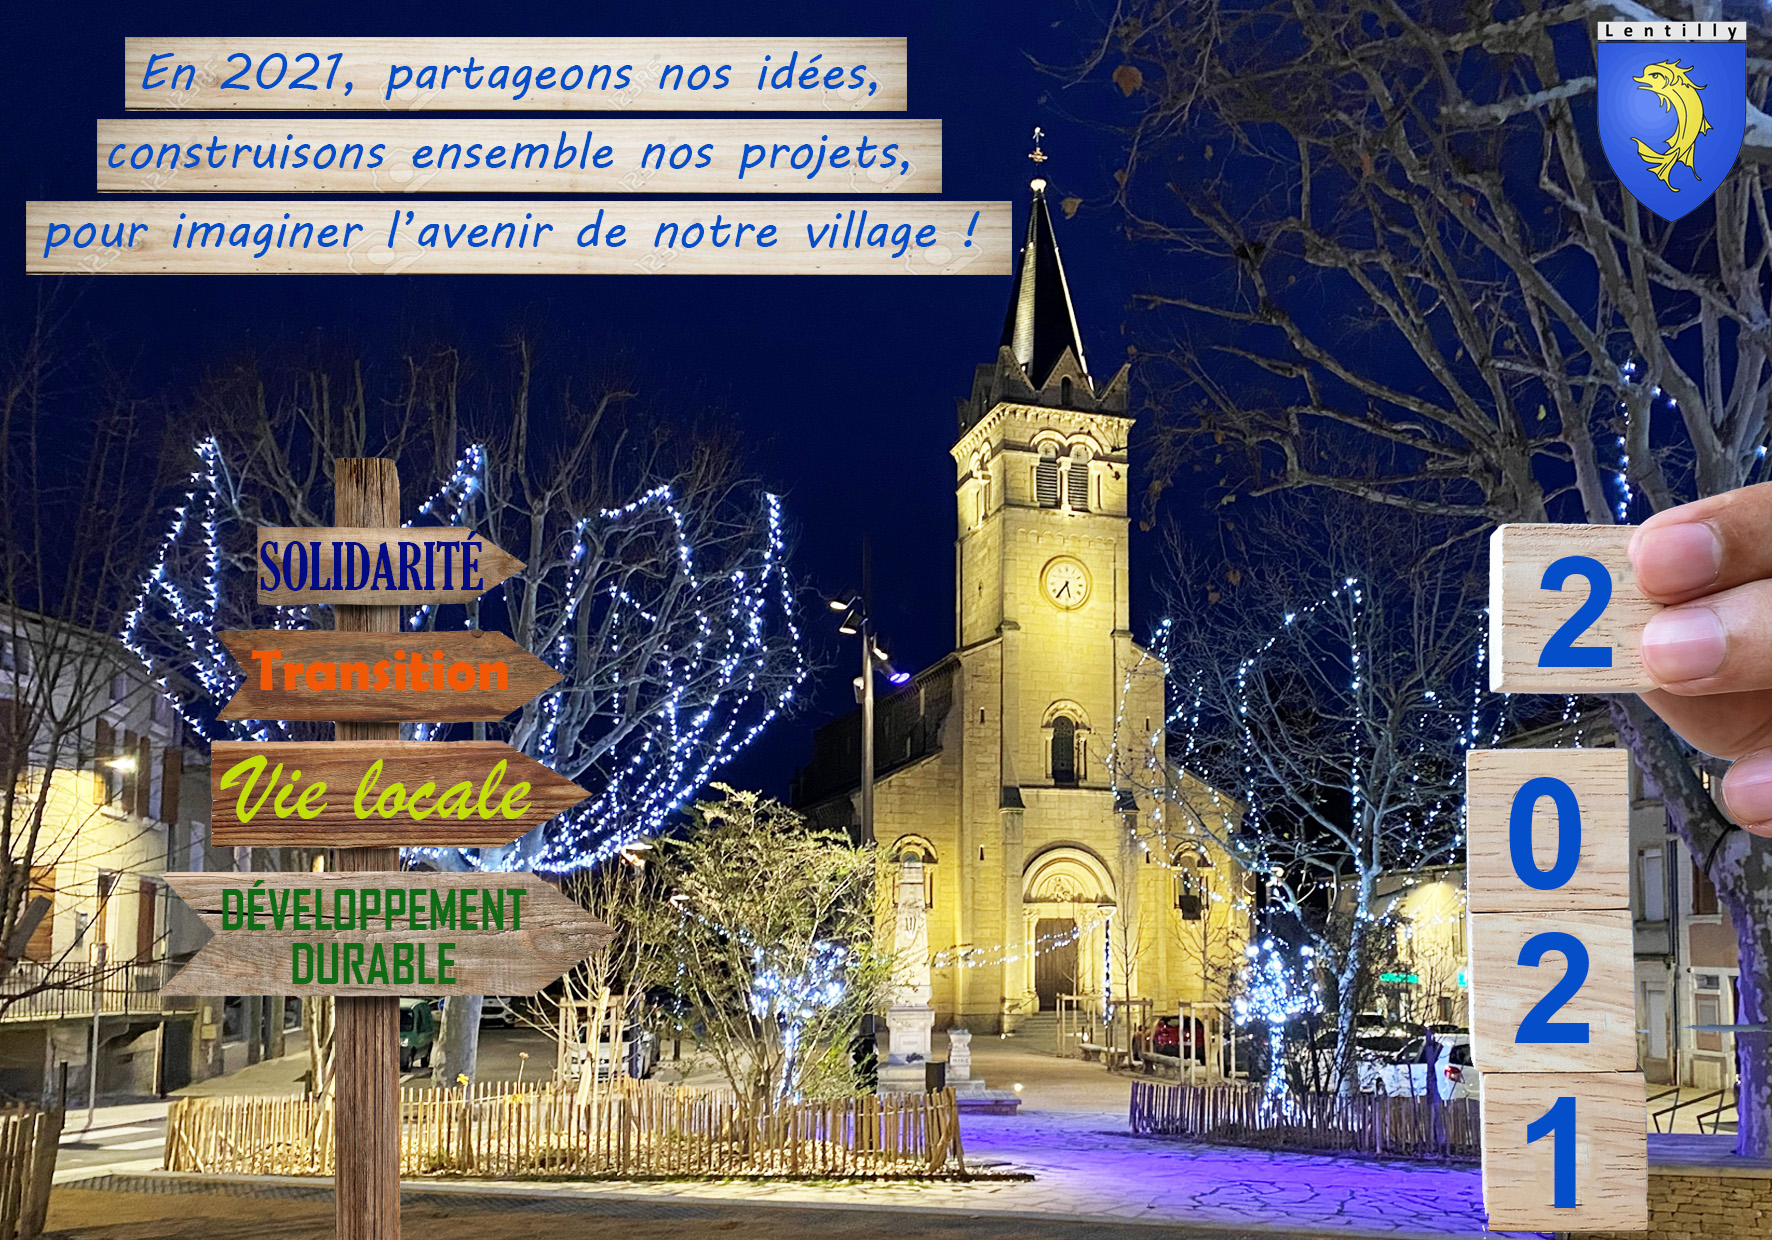 MEILLEURS VŒUX 2024 ! - Actualités - Mairie de l'Arbresle